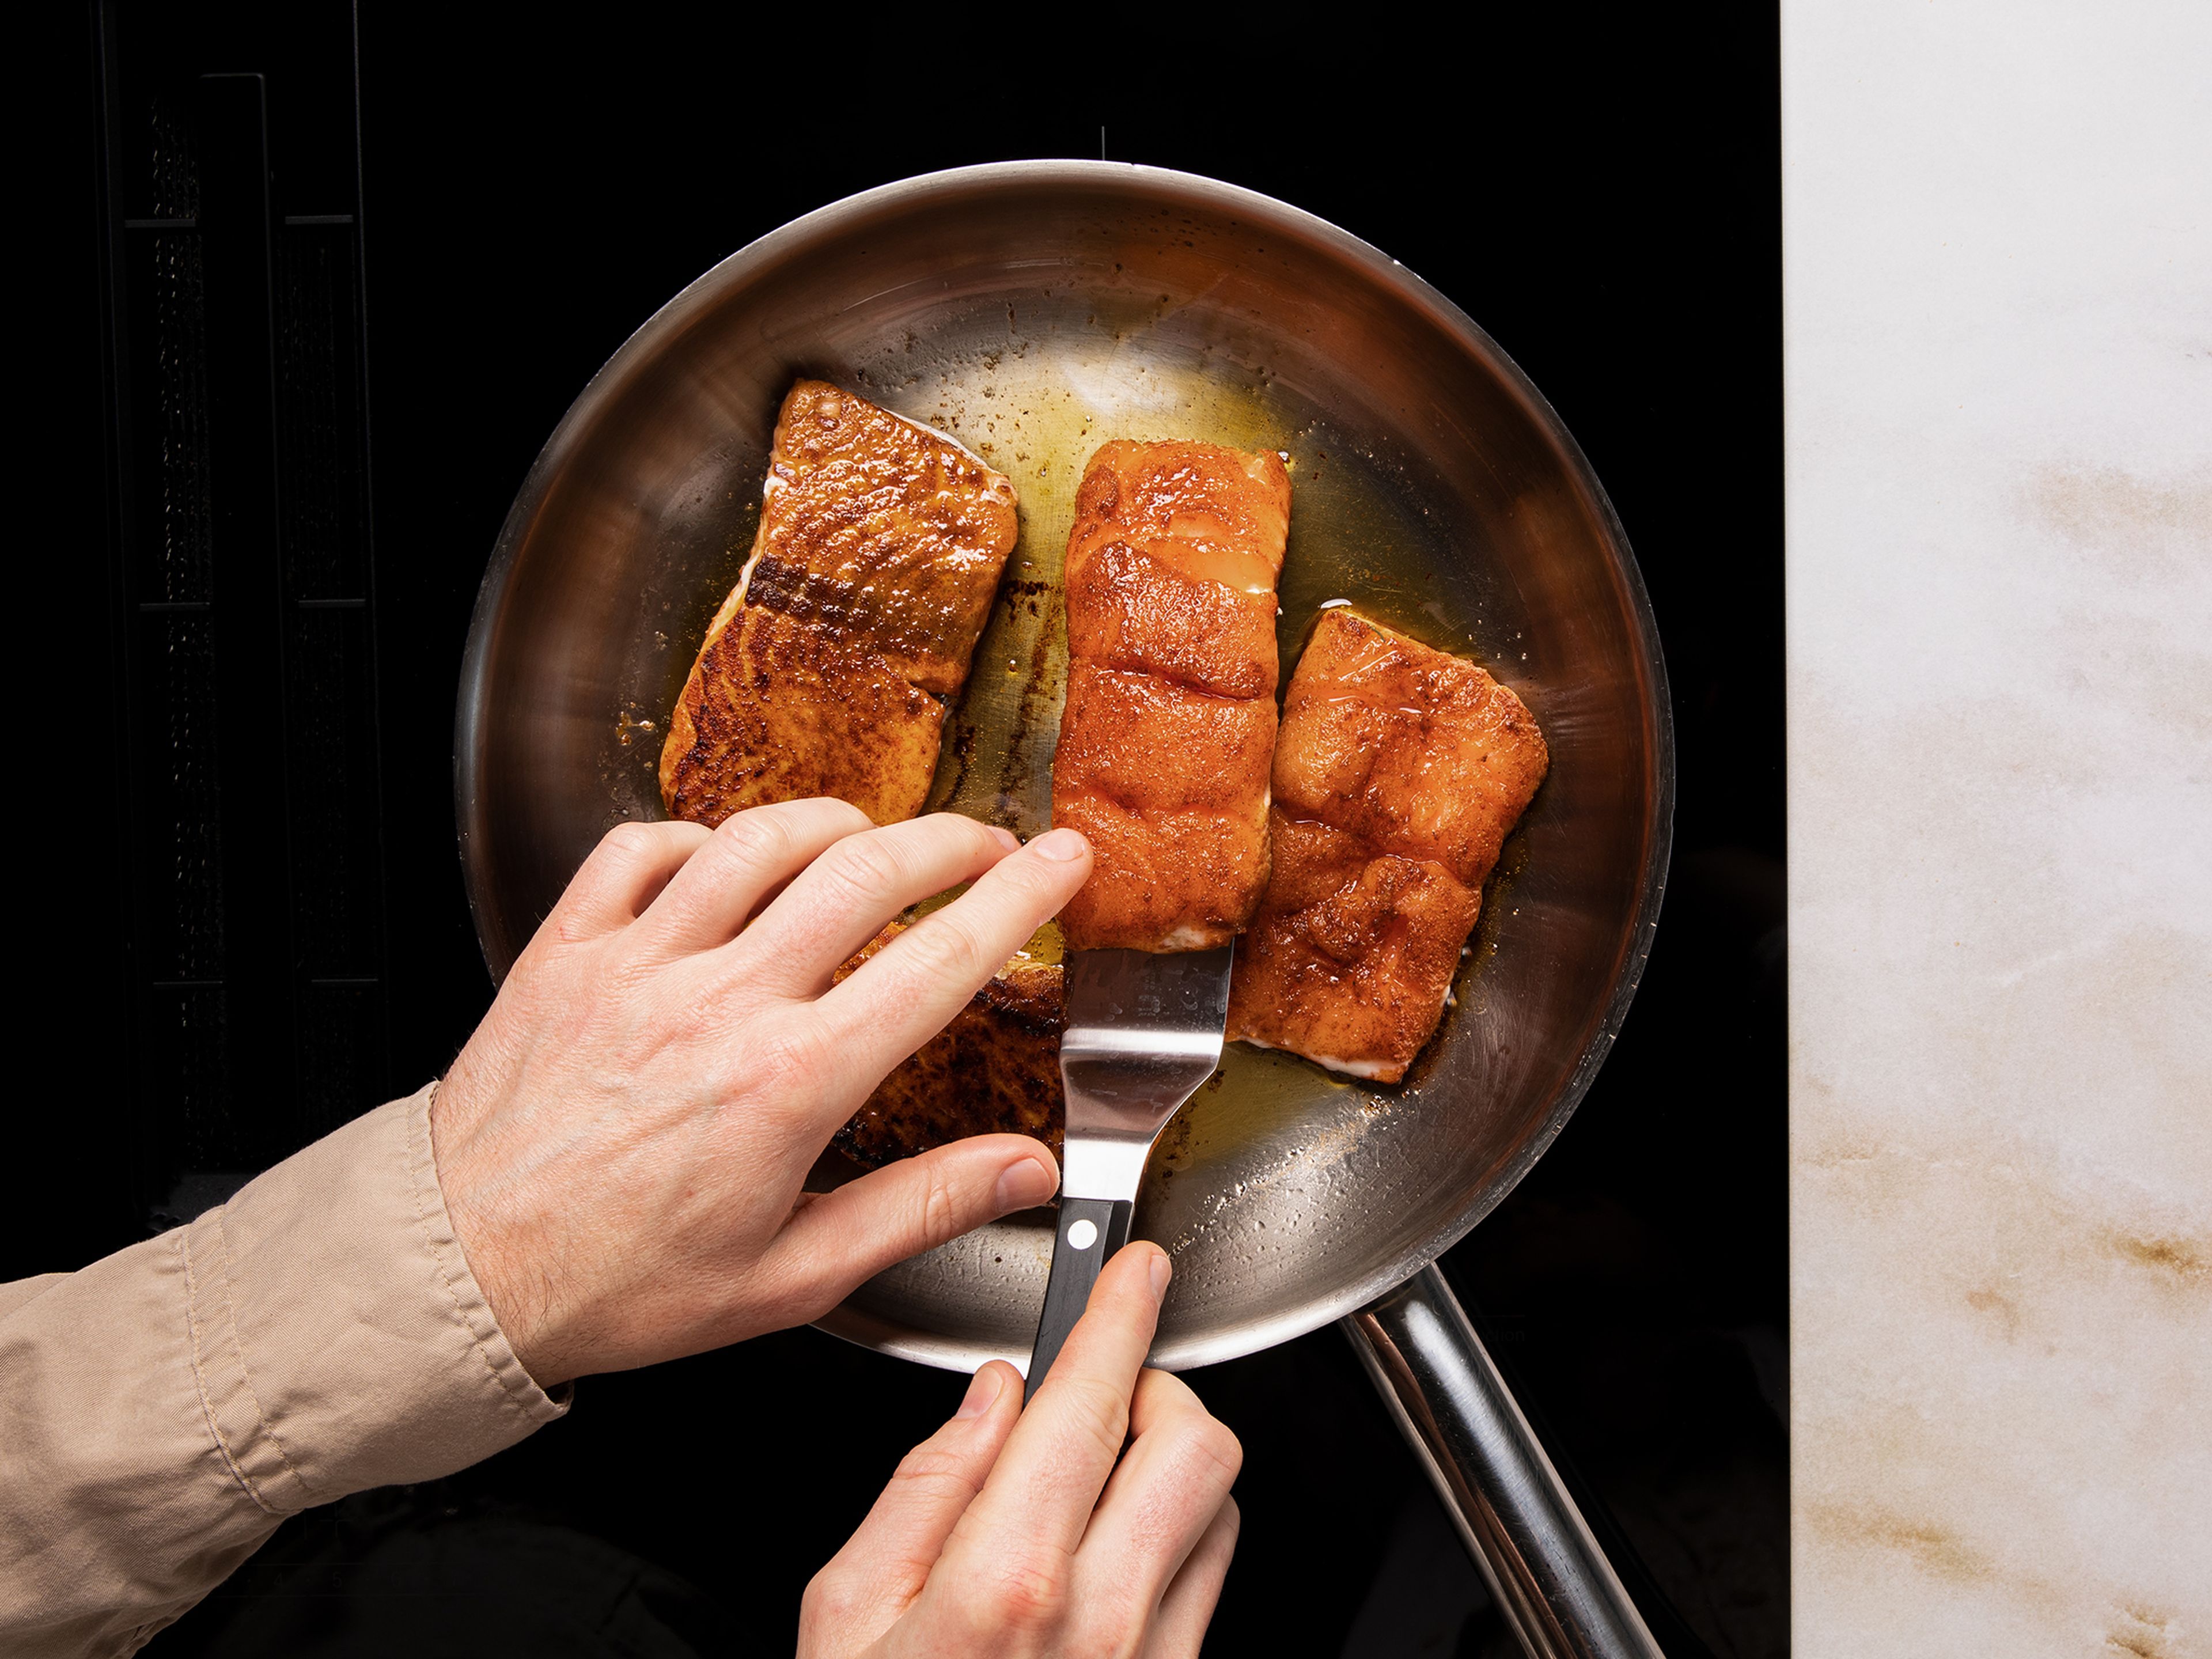 Rapsöl in einer Pfanne erhitzen und den Lachs bei mittlerer Hitze von beiden Seiten je ca. 3 Minuten braten.
Den Kartoffelsalat anrichten und je ein Stück Lachs dazugeben. Mit Dillspitzen garnieren.